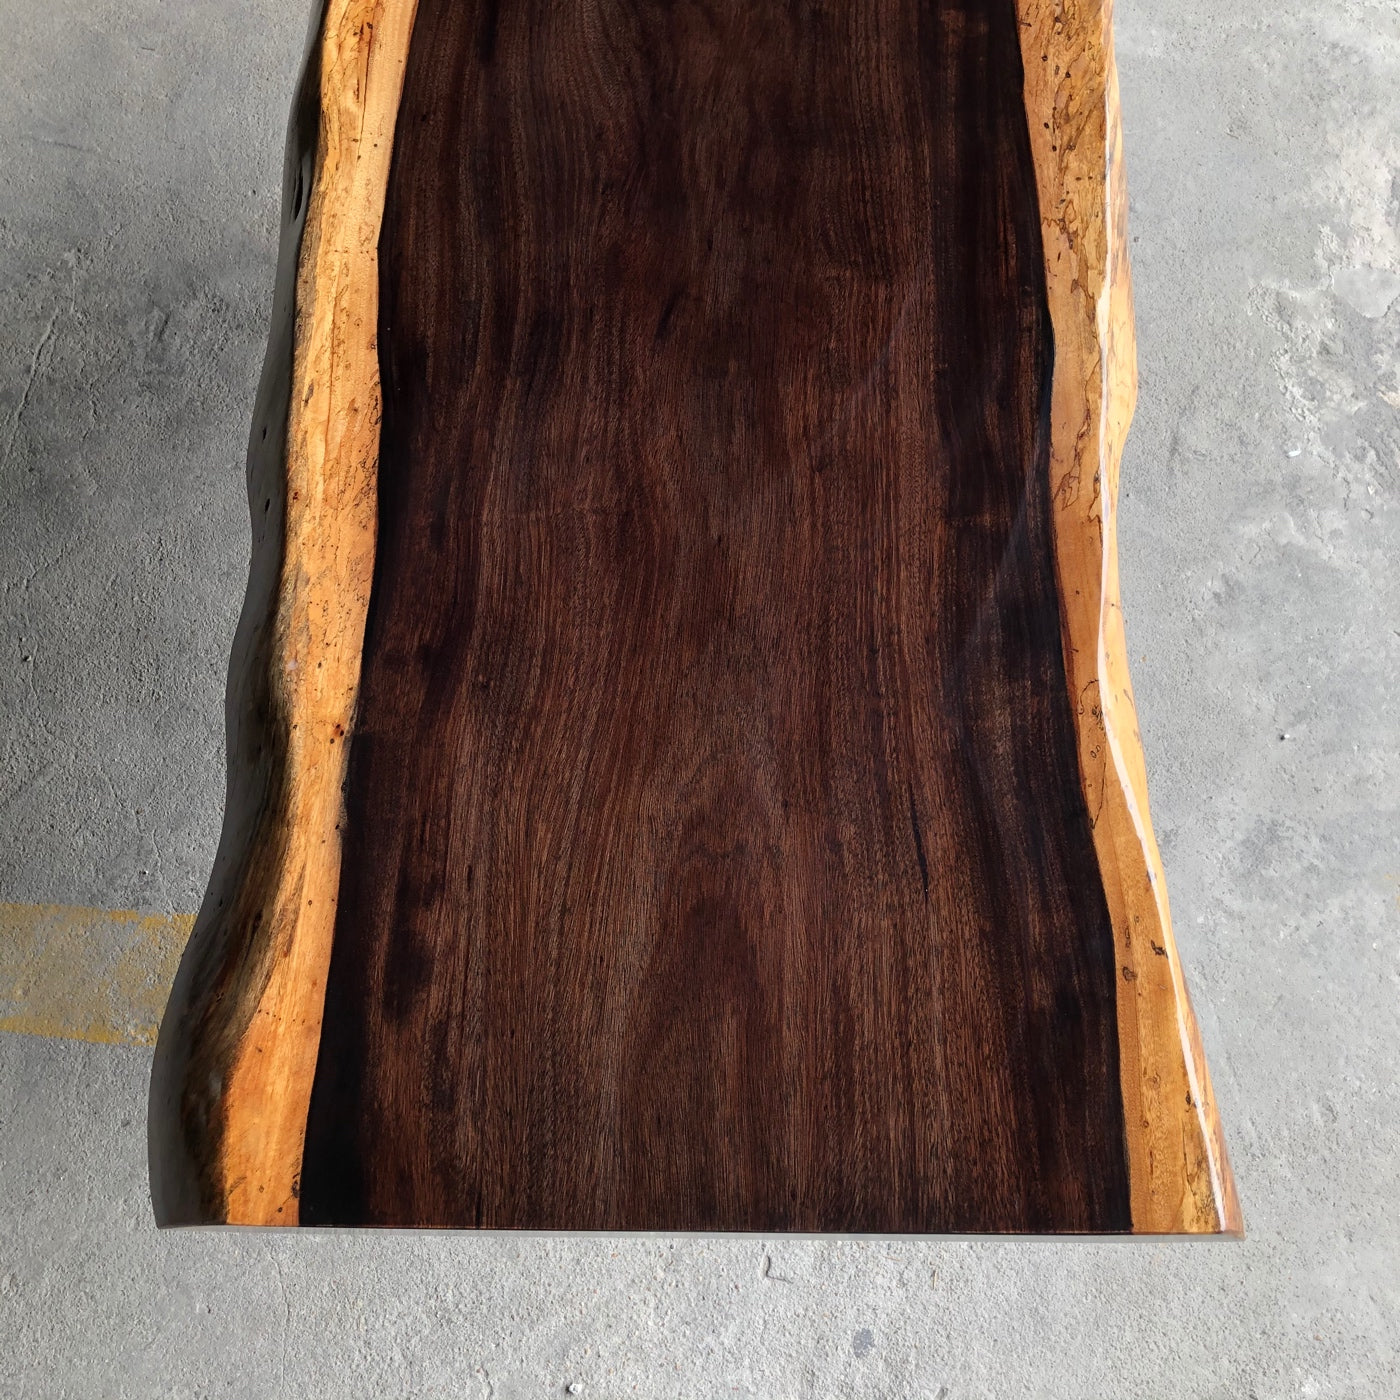 wood slabs, live edge slab, Western Africa wood slab table